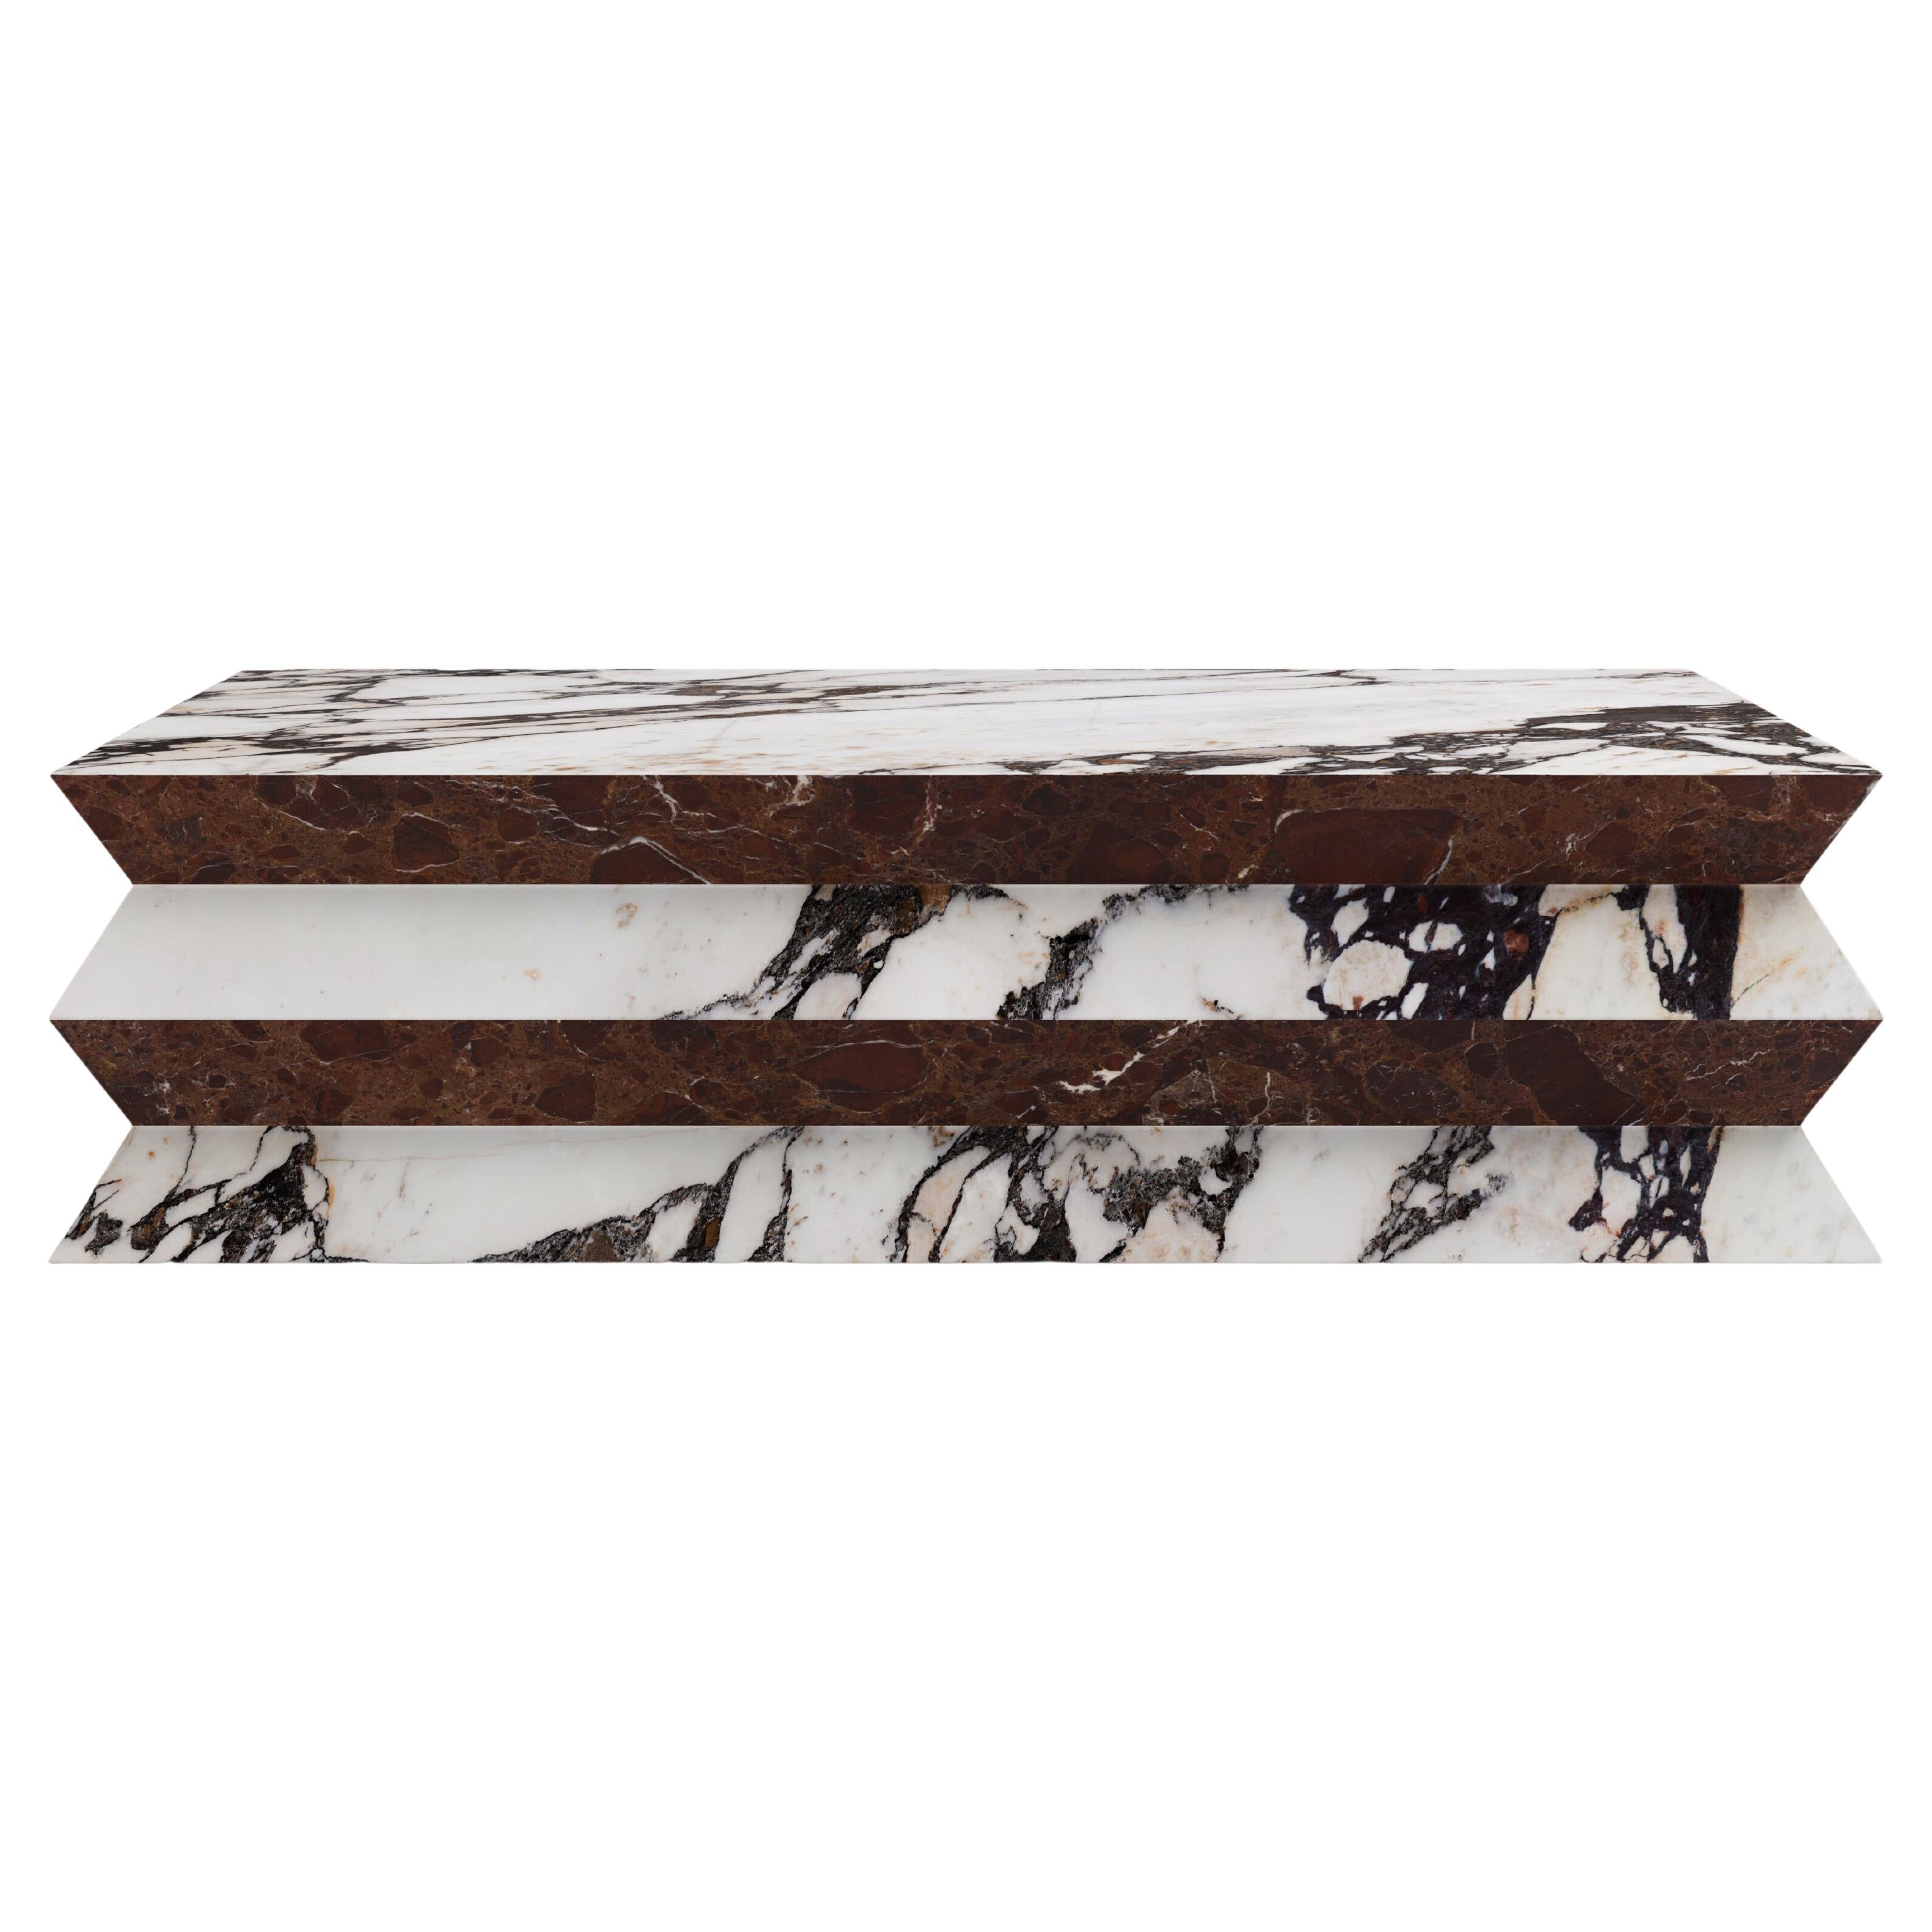 FORM(LA) Grinza table basse rectangulaire 60 po. (L) x 36 po. (L) x 16 po. (H) marbre Calacatta Viola en vente